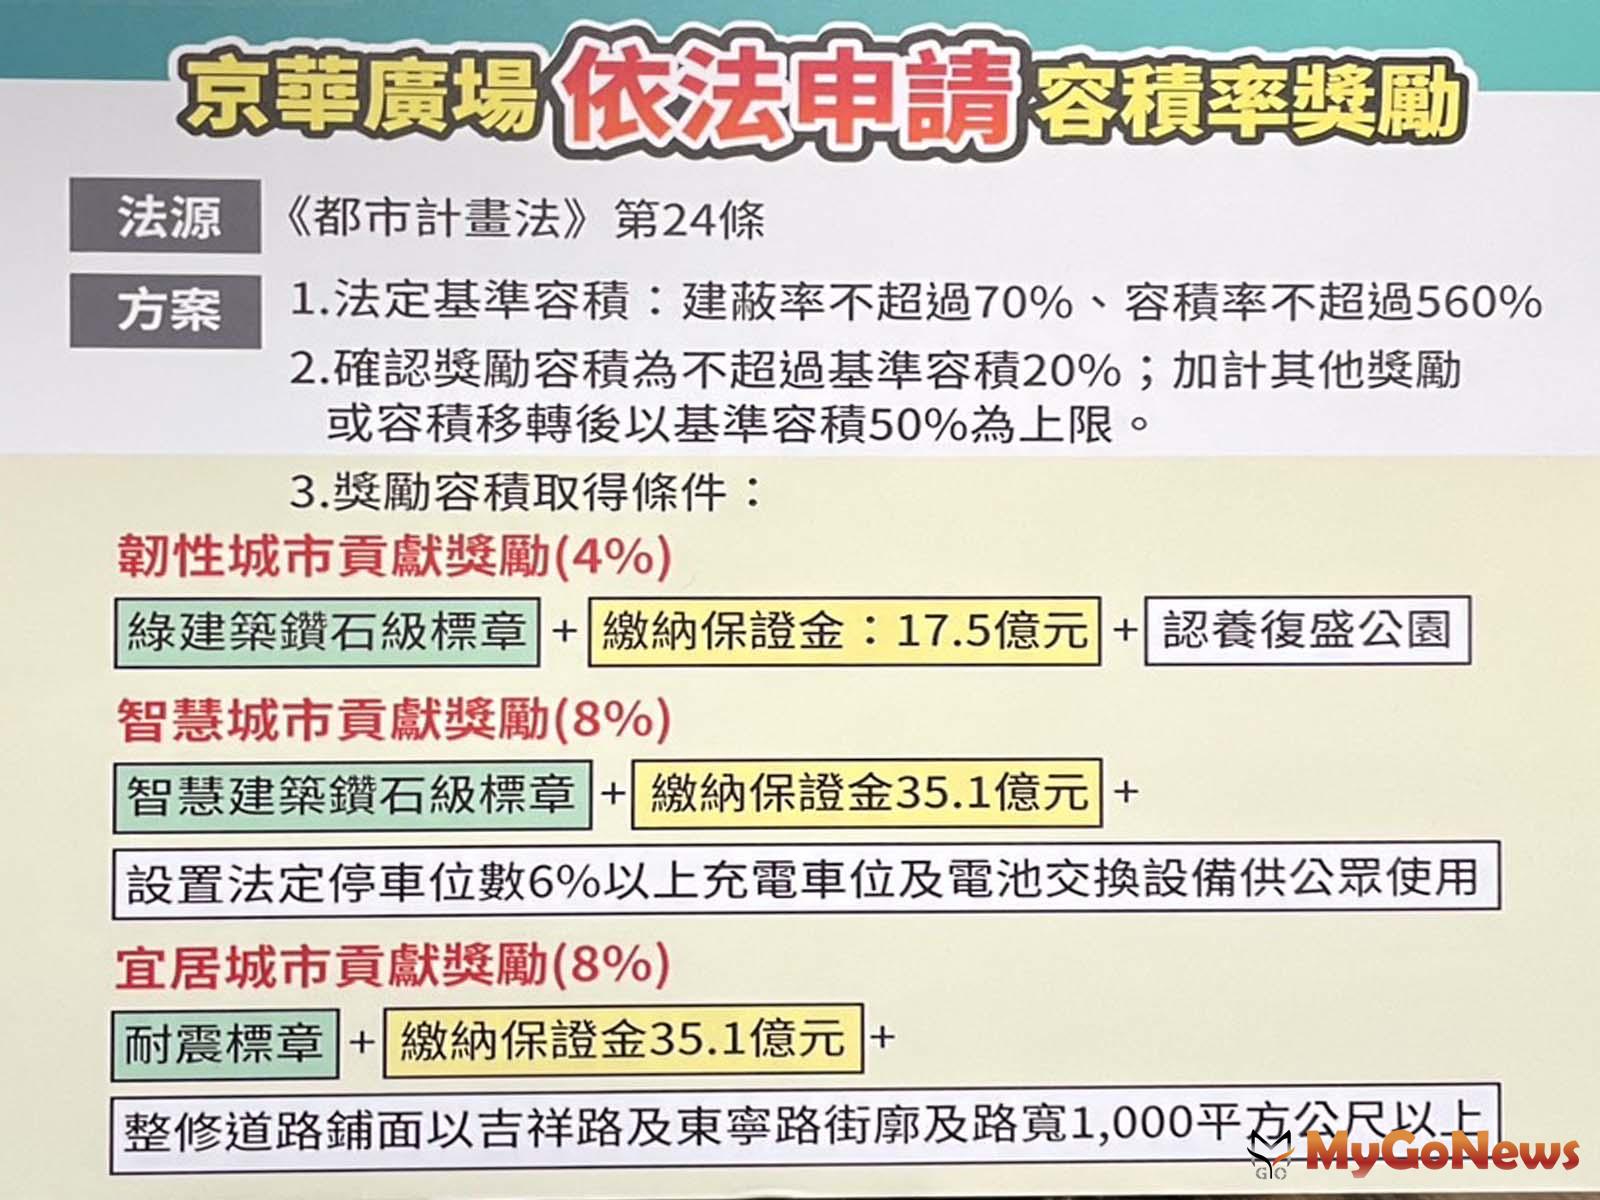 京華城公司說明依據《都市計畫法》第24條，依法申請容積率 MyGoNews房地產新聞 市場快訊